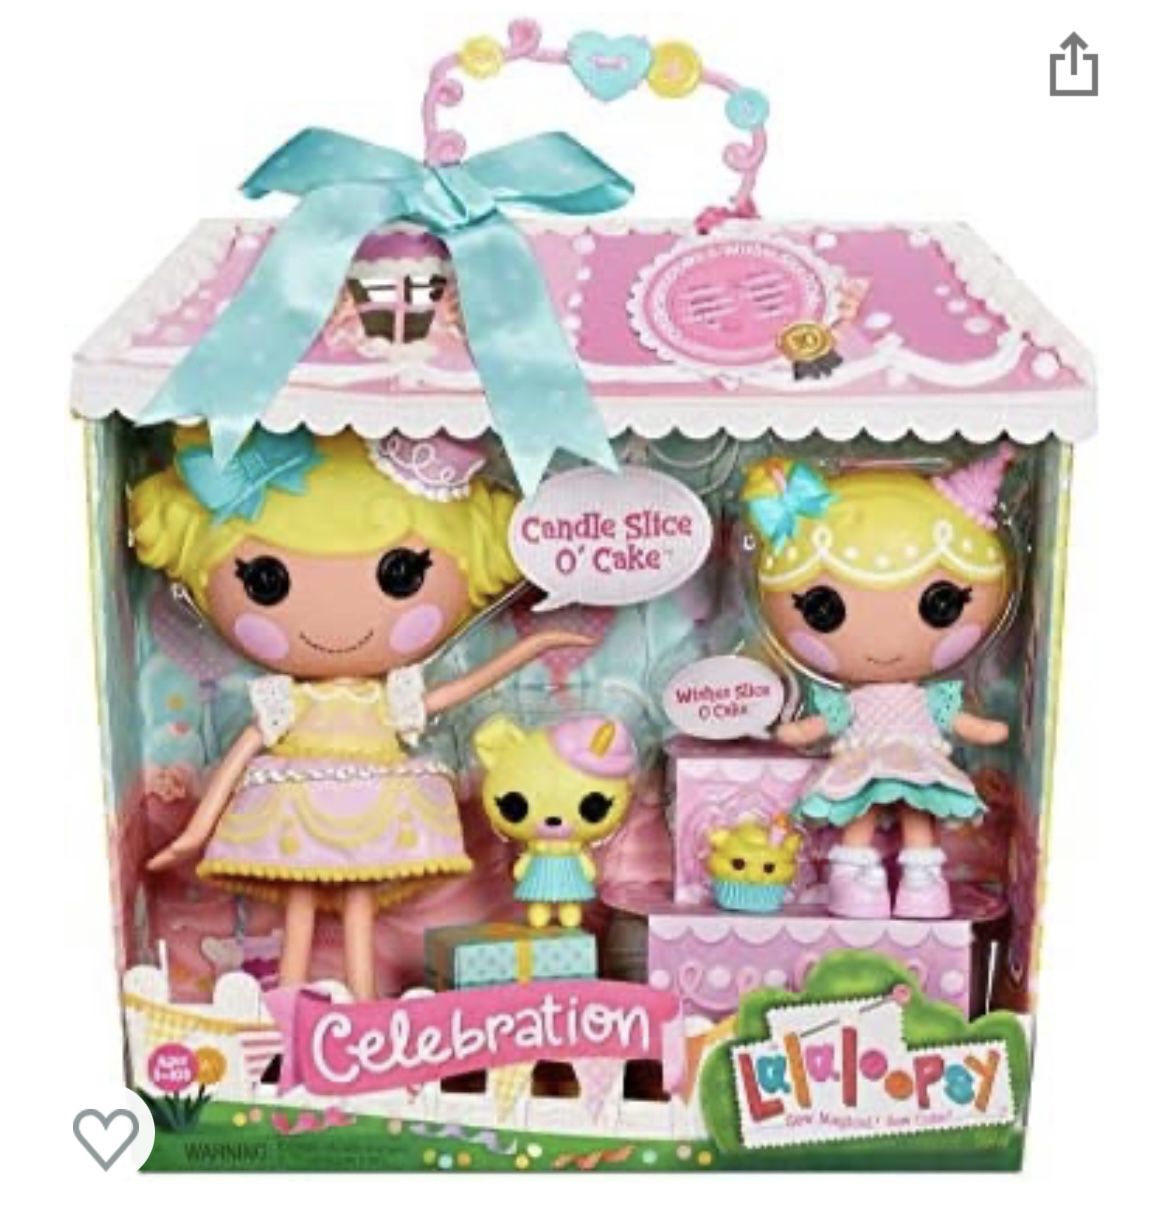 Lalaloopsy Doll Set - Candle & Wishes Slice O' Cake - Large & Little Dolls  -